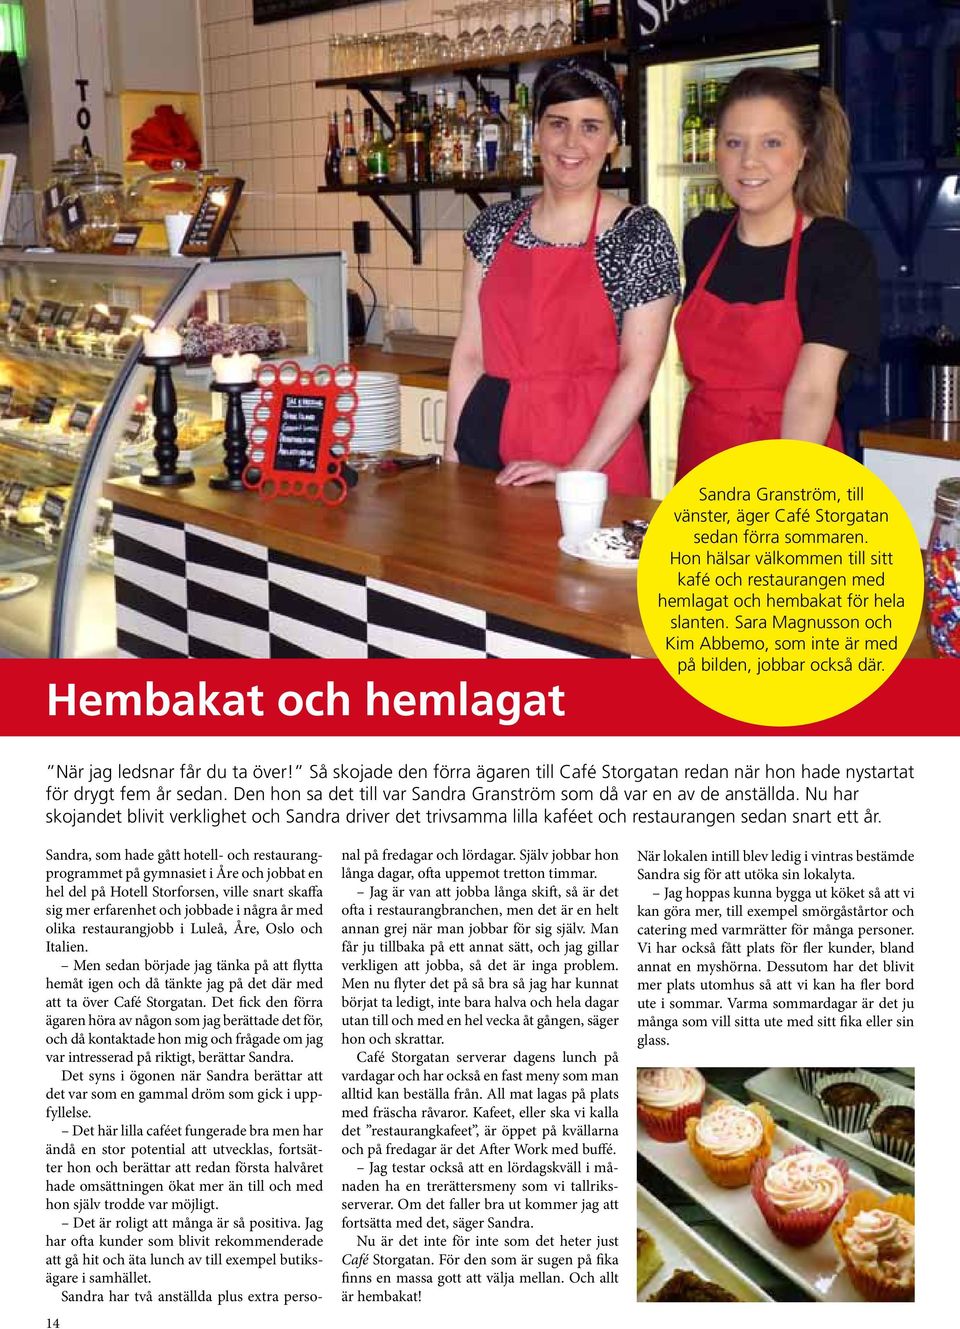 Så skojade den förra ägaren till Café Storgatan redan när hon hade nystartat för drygt fem år sedan. Den hon sa det till var Sandra Granström som då var en av de anställda.